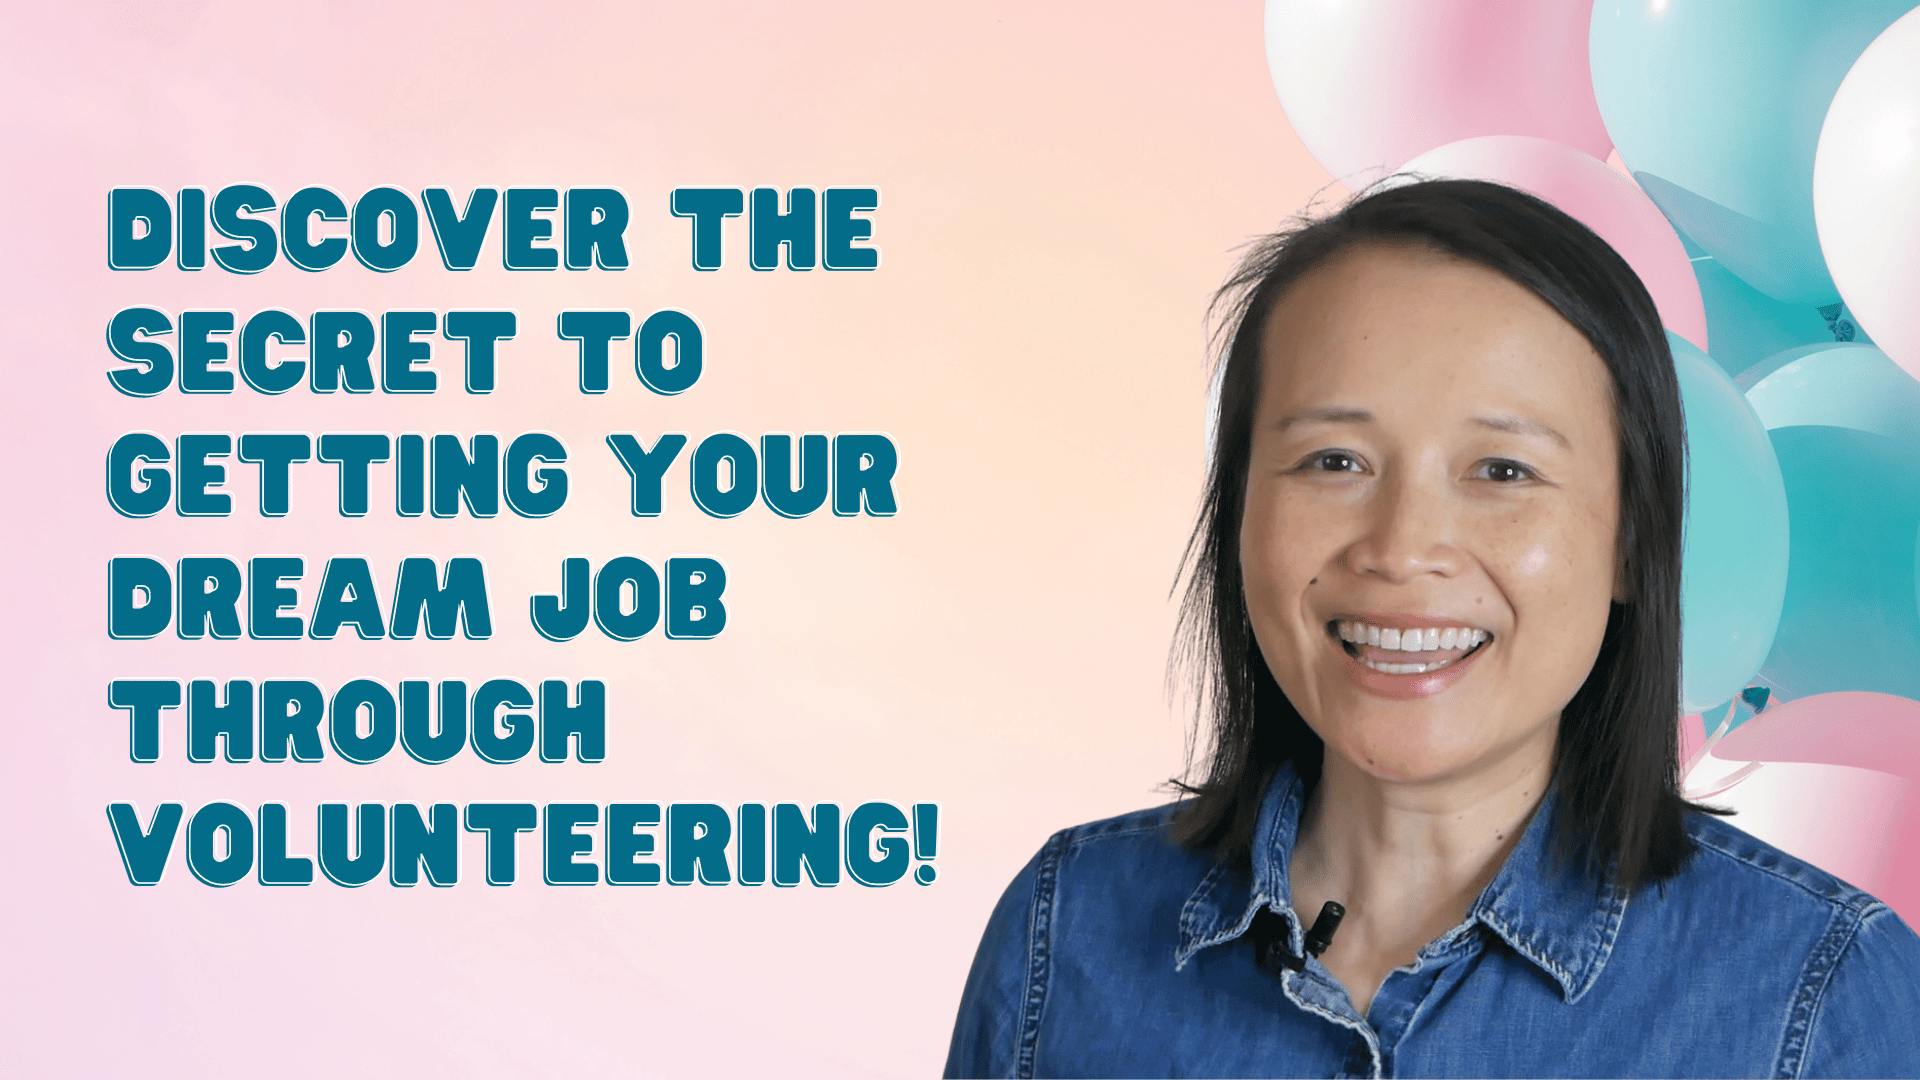 Get Your Dream Job Through Volunteer Work